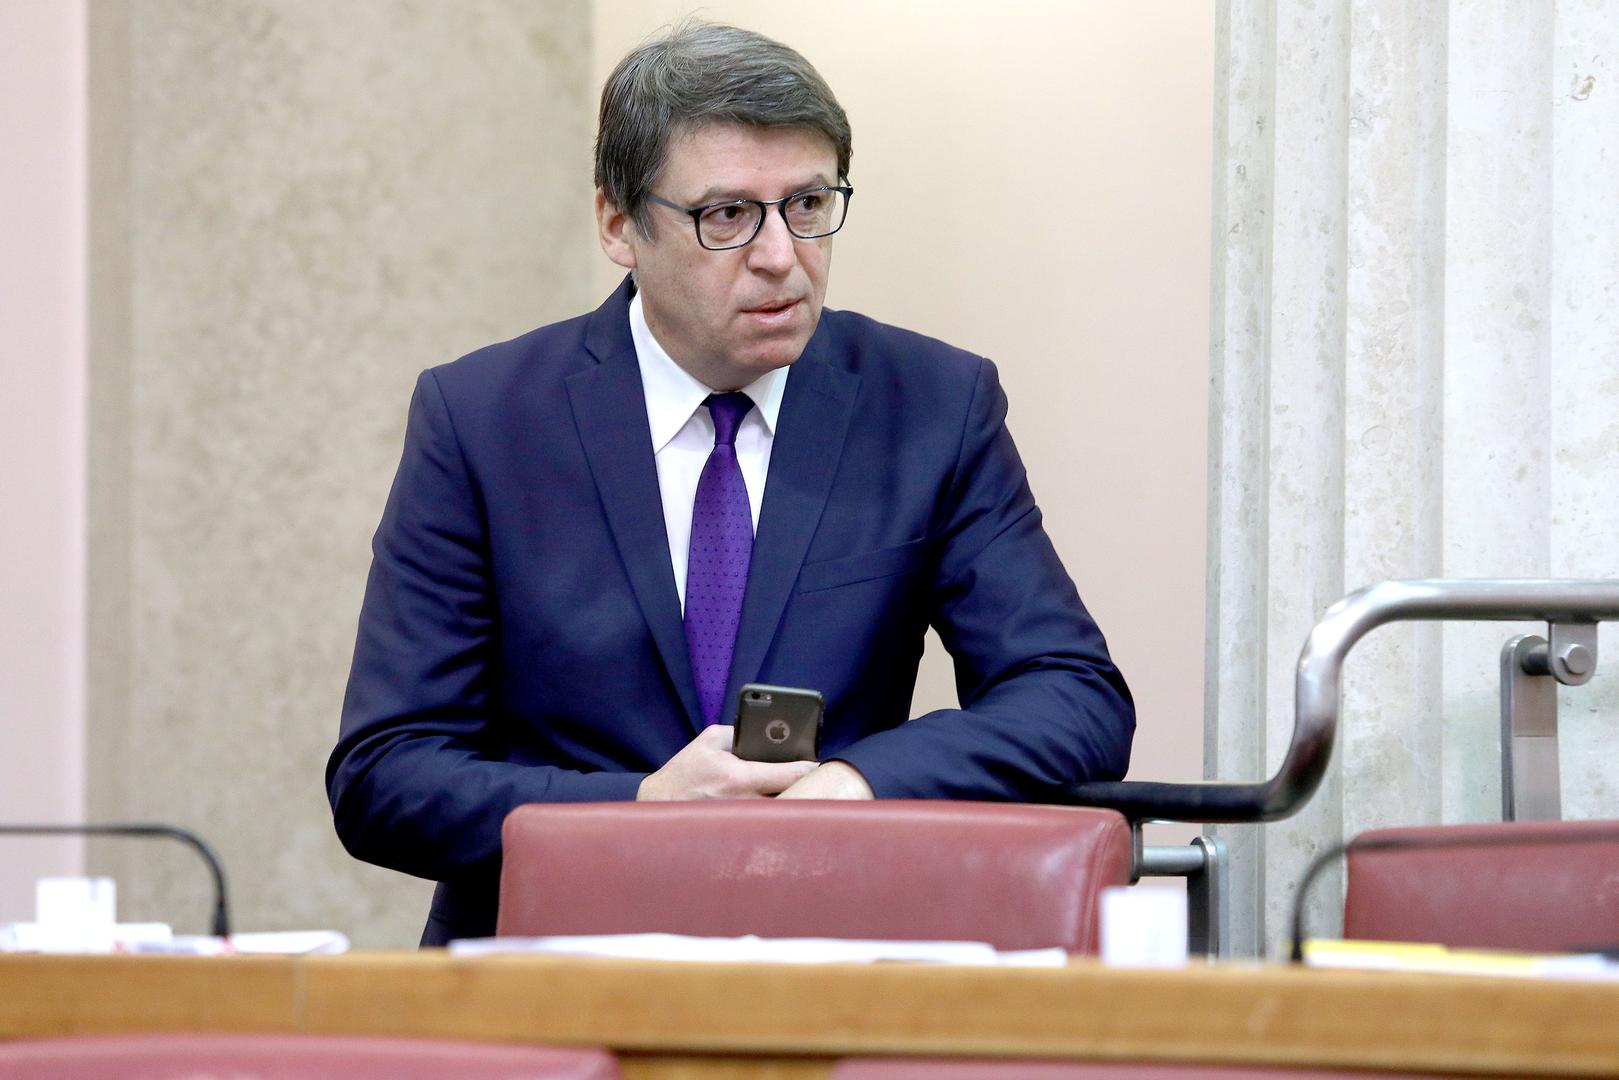 Željko Jovanović, SDP: U mojem mandatu nije bilo ovakve provjere jer nije bilo ni informacija o nepravilnostima. Pozdravljam odluku ministrice Divjak